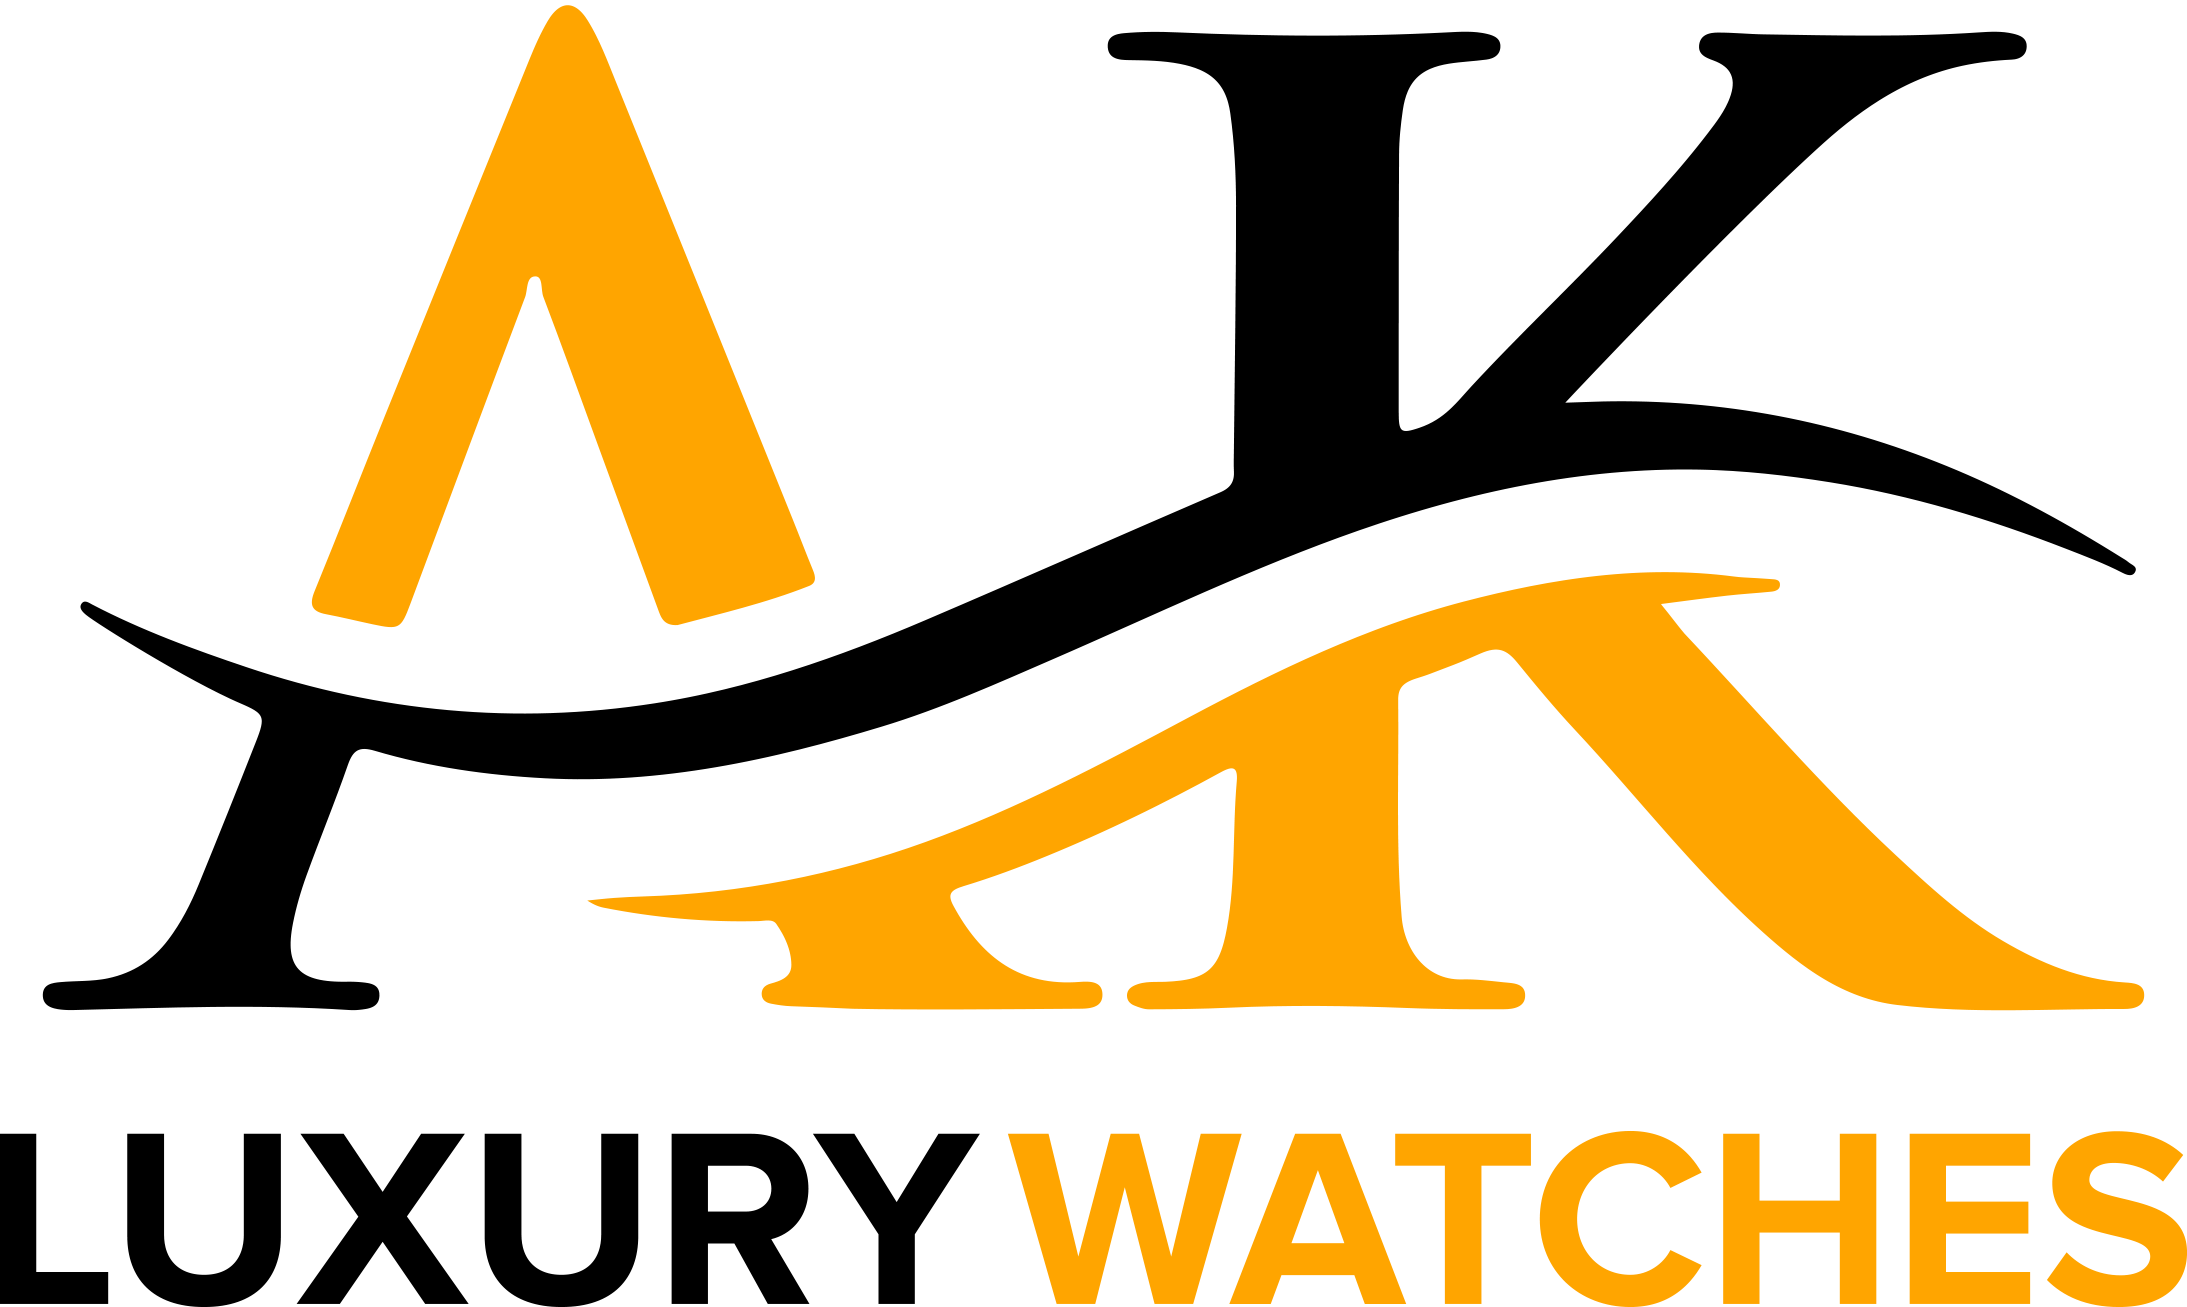 AK Watches